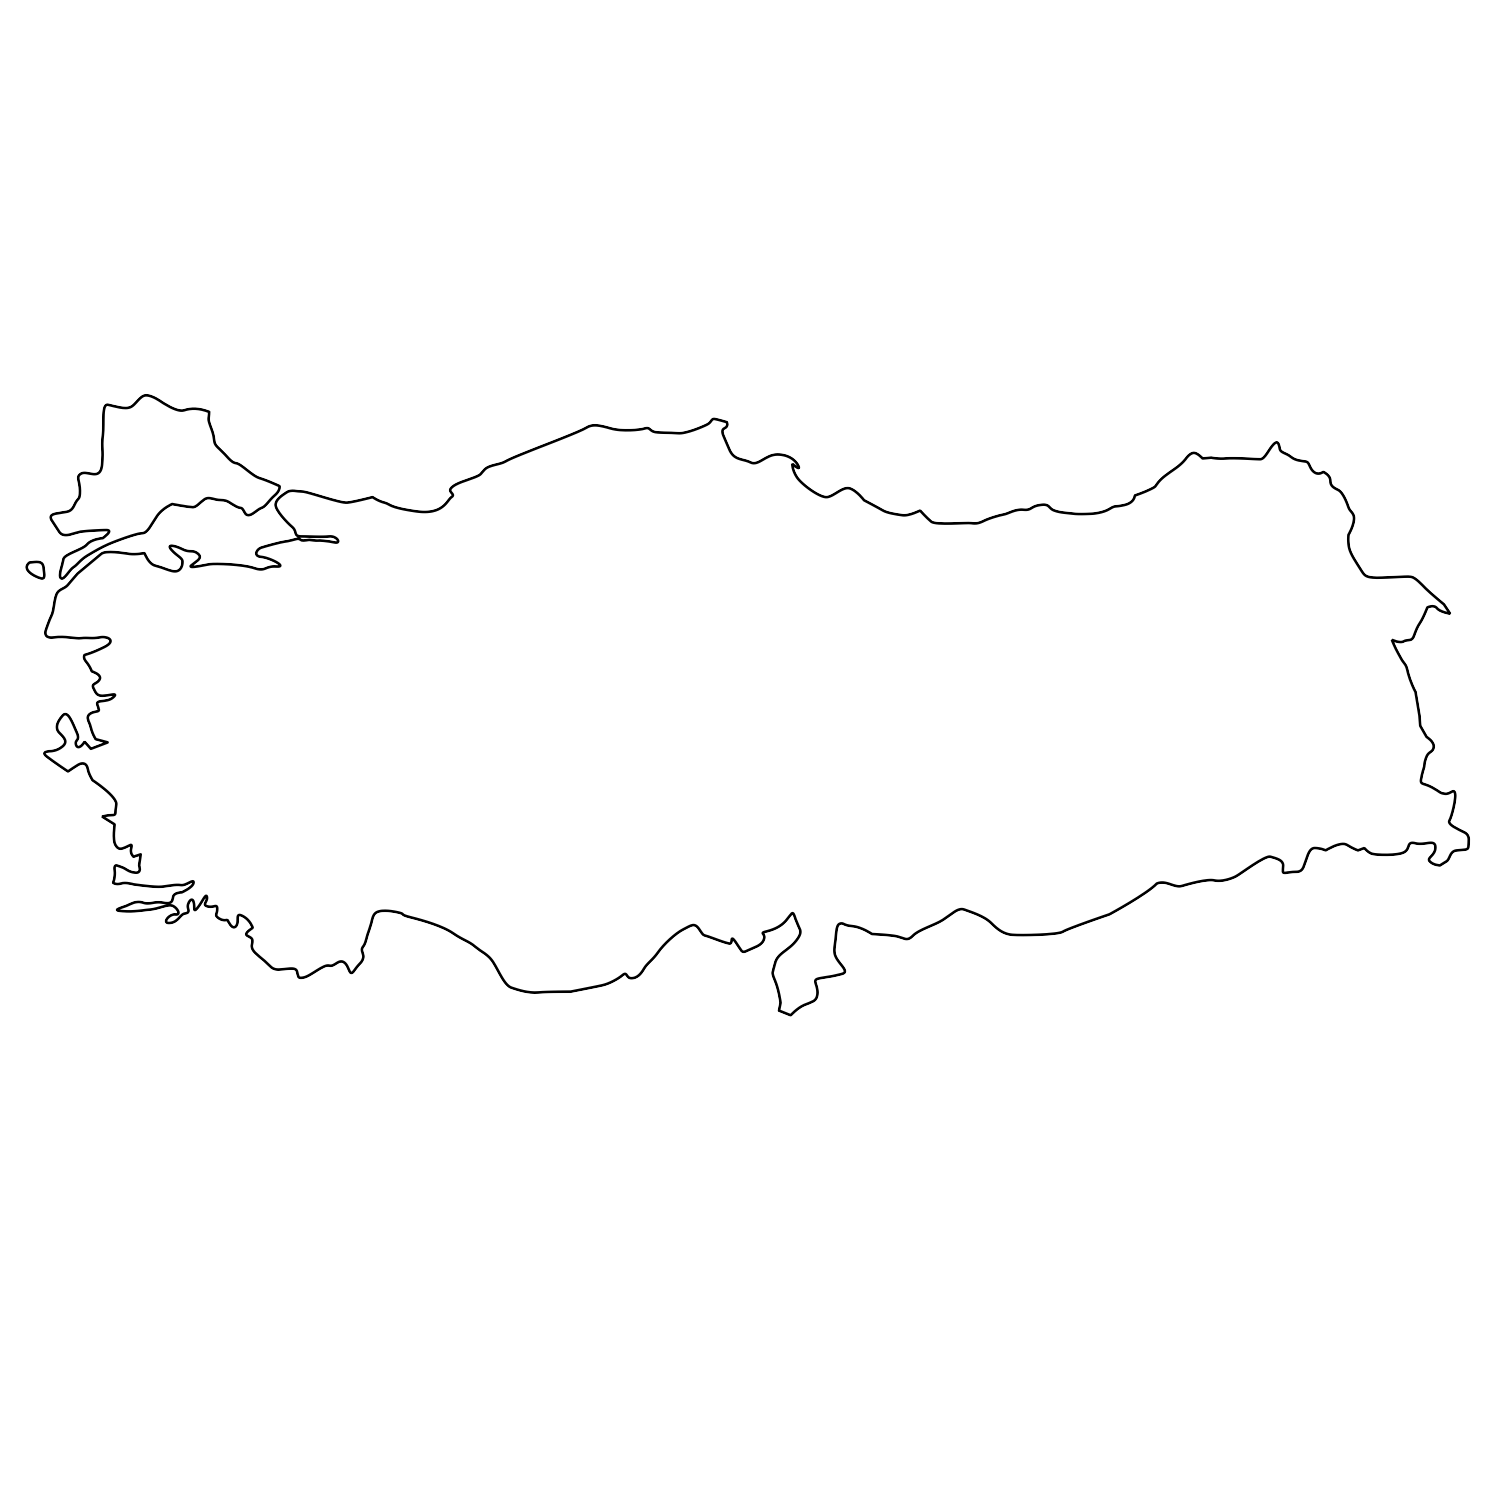 Türkei (nur in Konturen) | Landkarten kostenlos - Cliparts ...